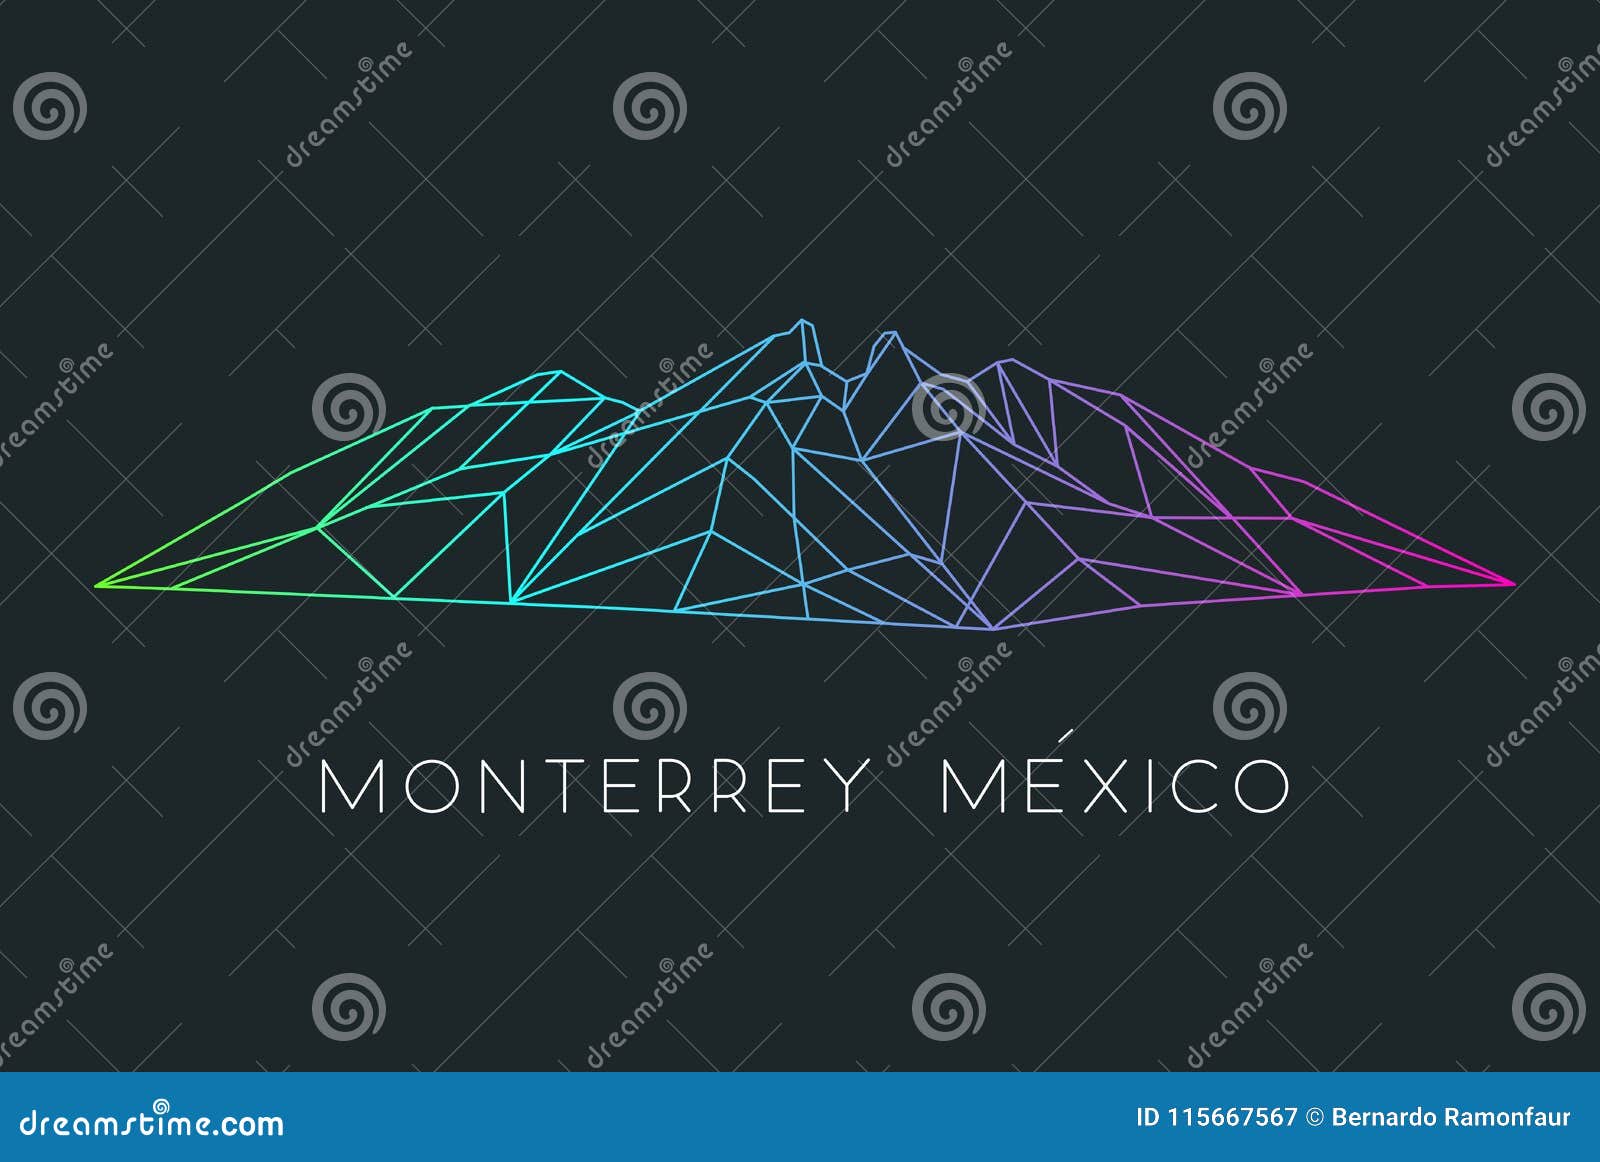 famous mountain icon of monterrey mexico